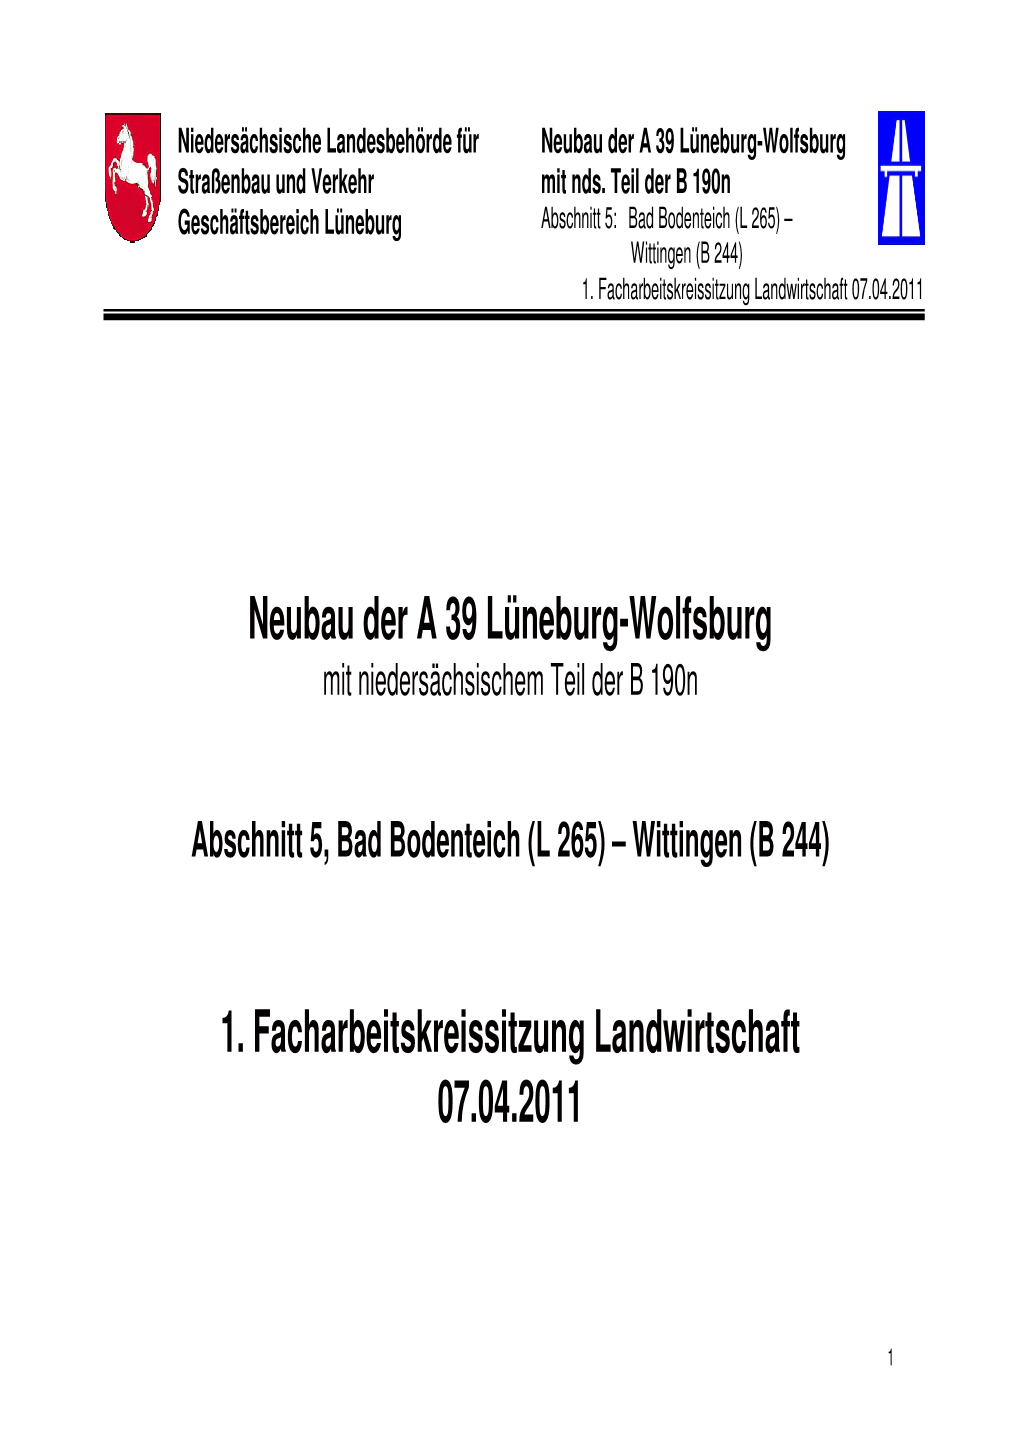 Neubau Der a 39 Lüneburg-Wolfsburg 1